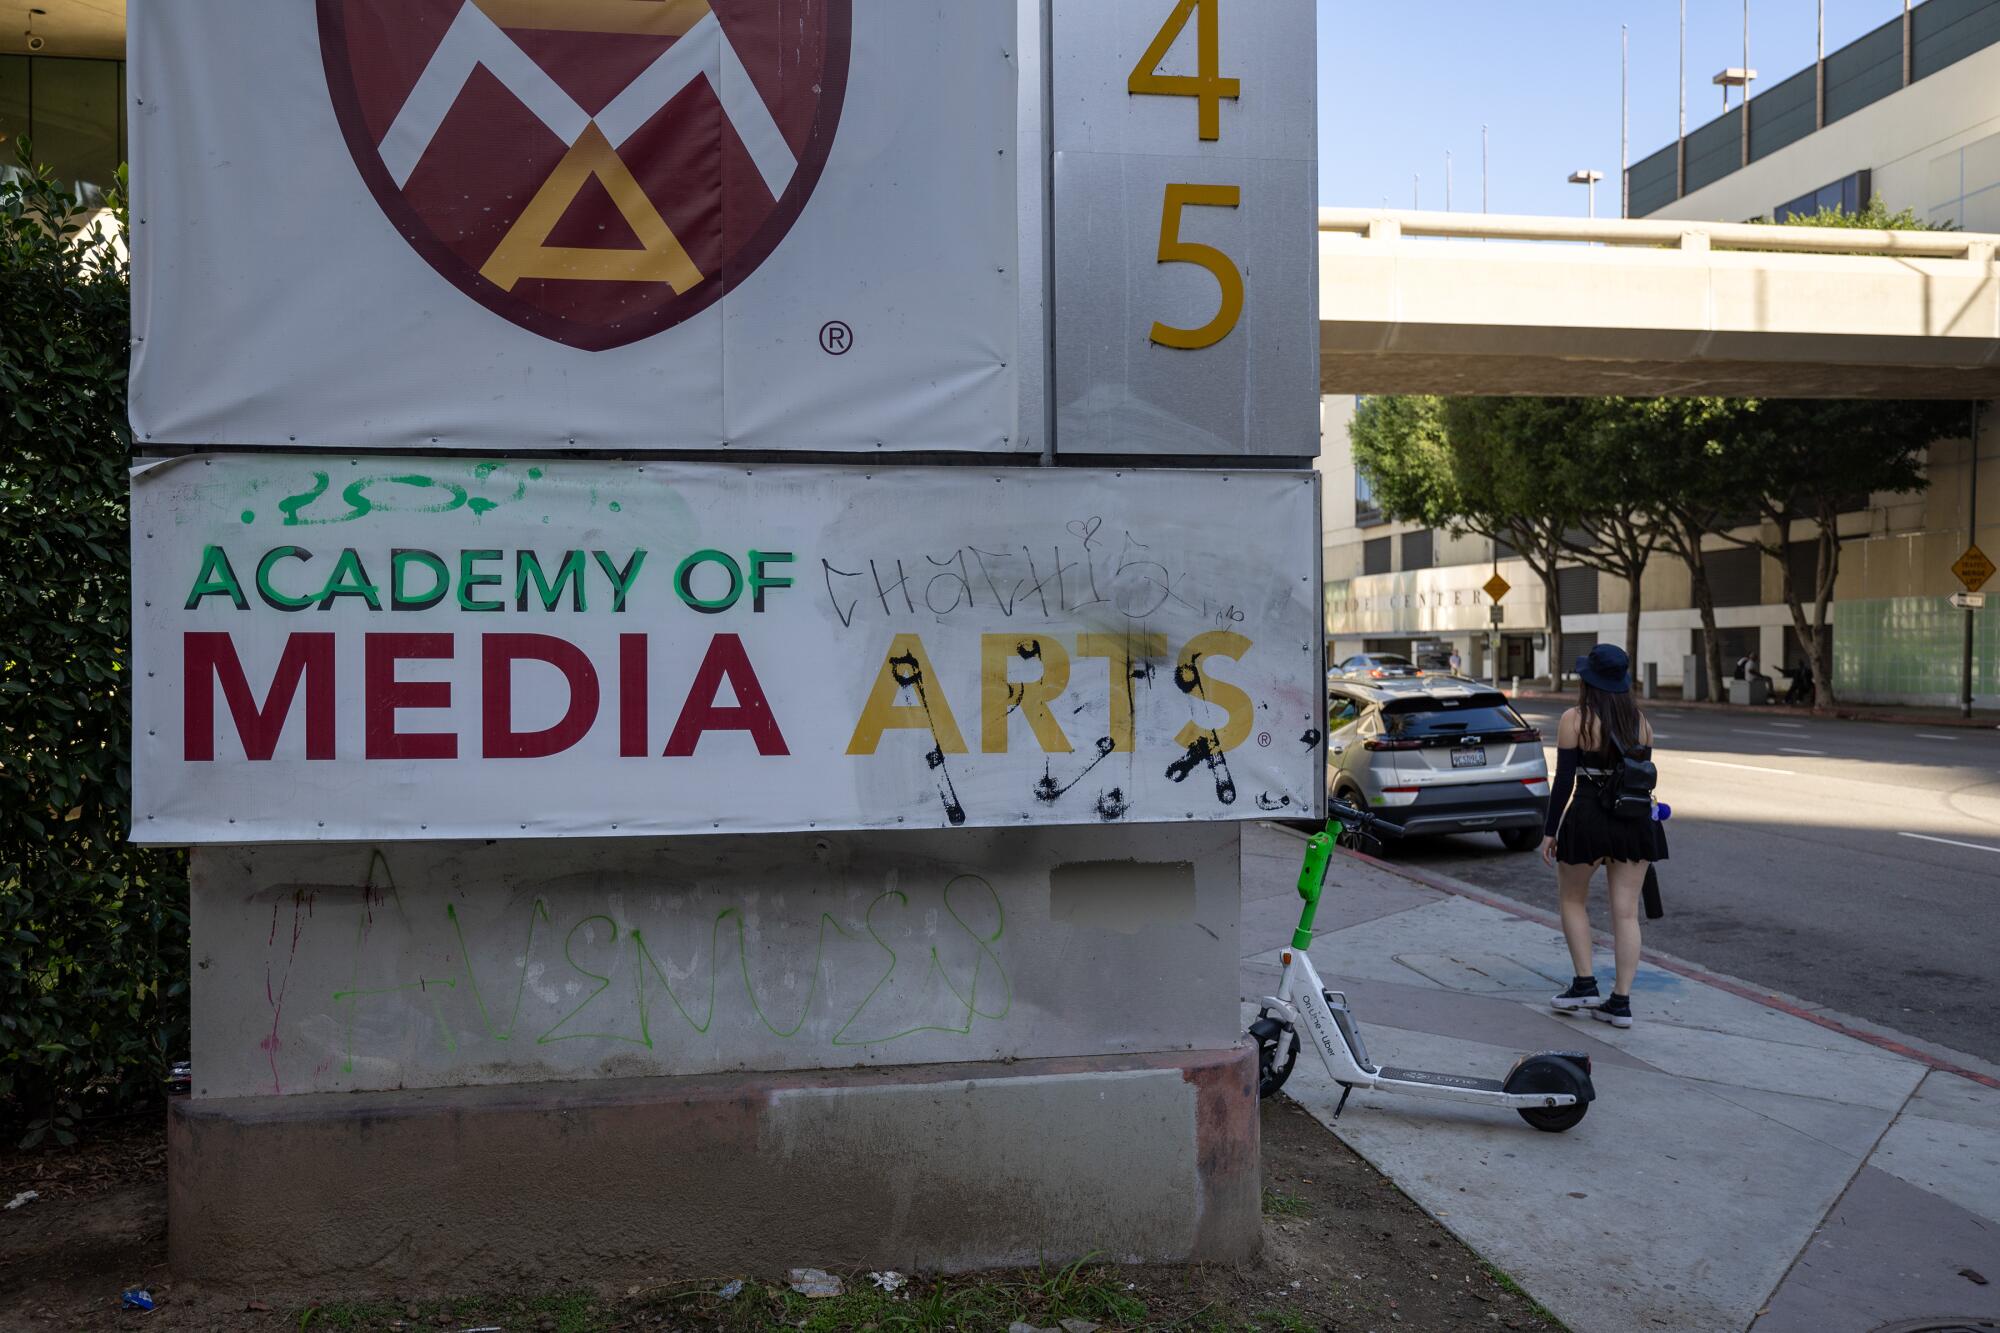   Graffiti sur une pancarte scolaire, détritus et scooter abandonné devant l’école Académie des arts médiatiques.